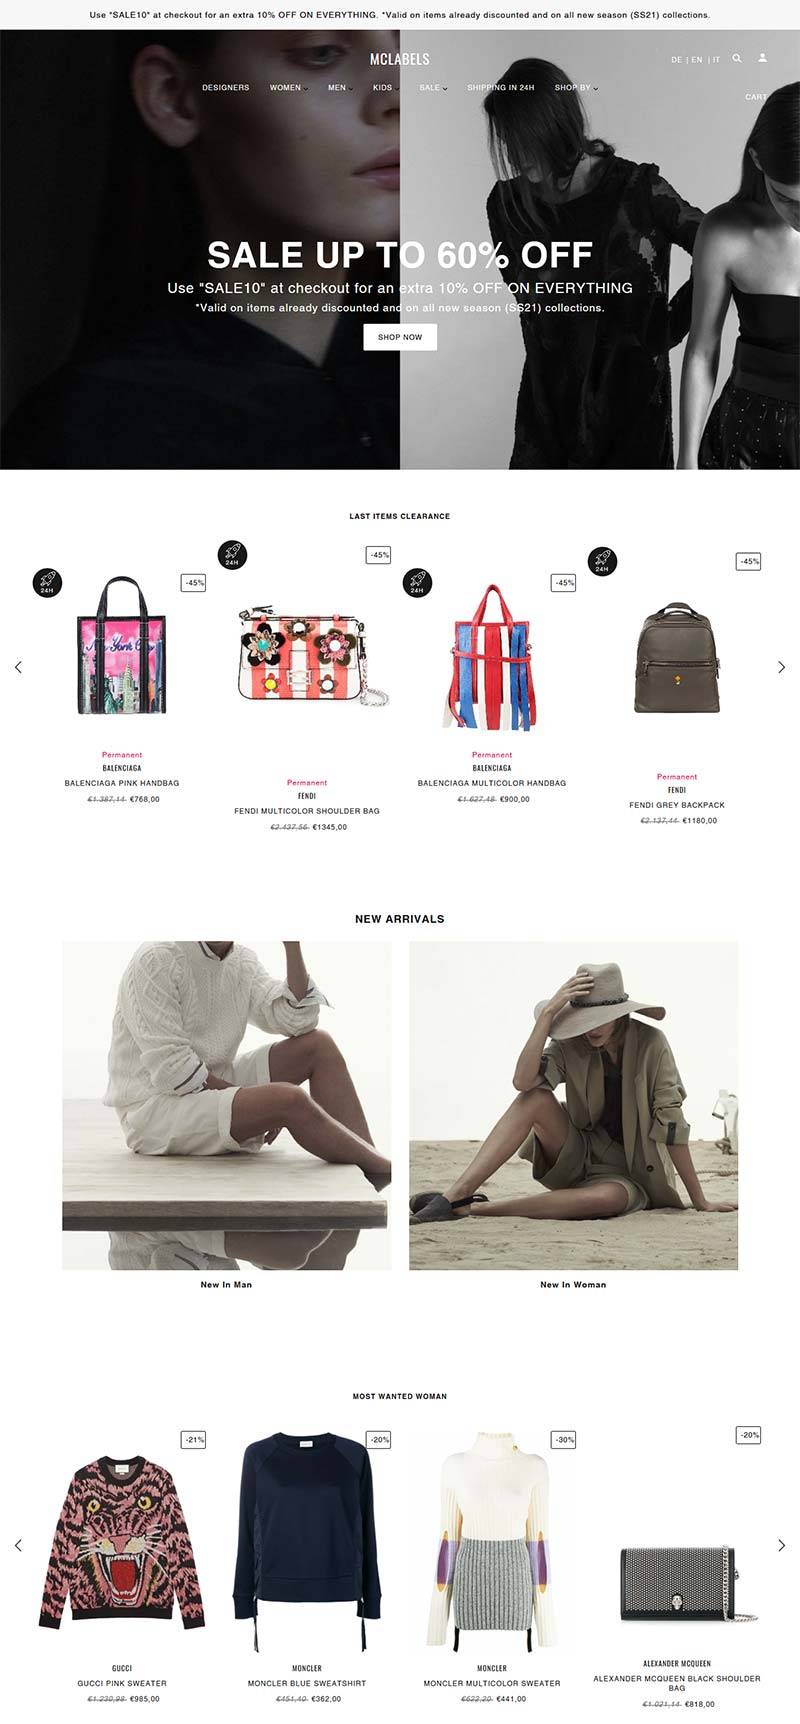 Mclabels 意大利奢侈品服饰购物网站